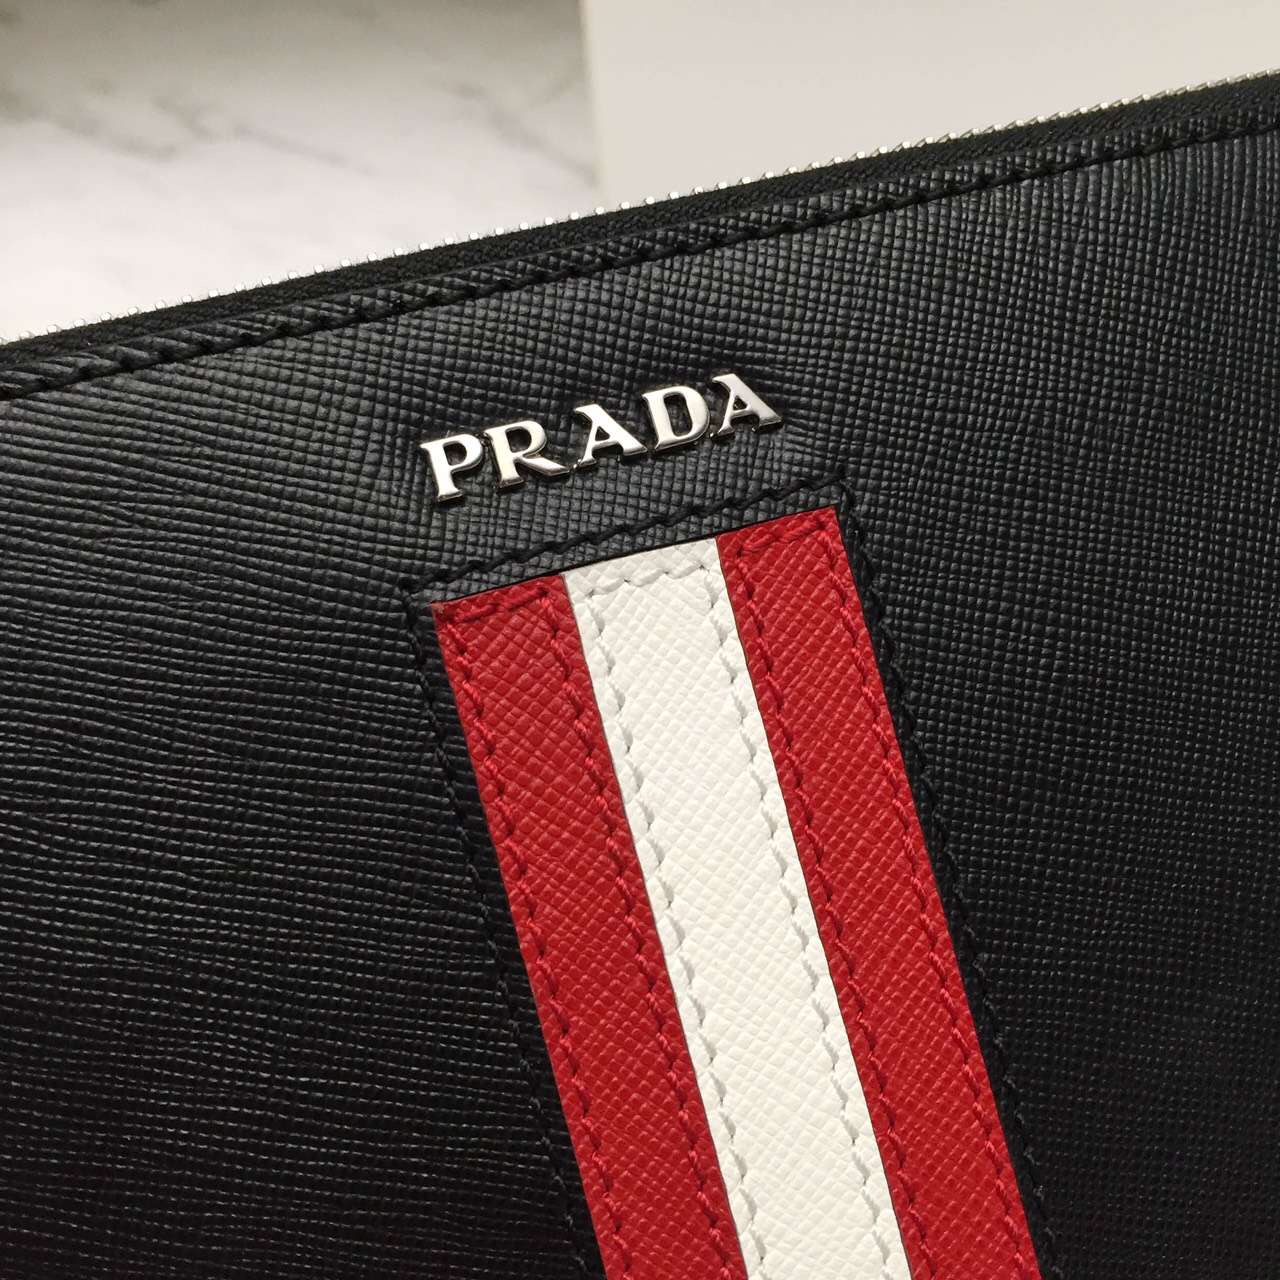 原版复刻PRADA手拿包-高仿一比一普拉达男士钱包包ECS002723商标图